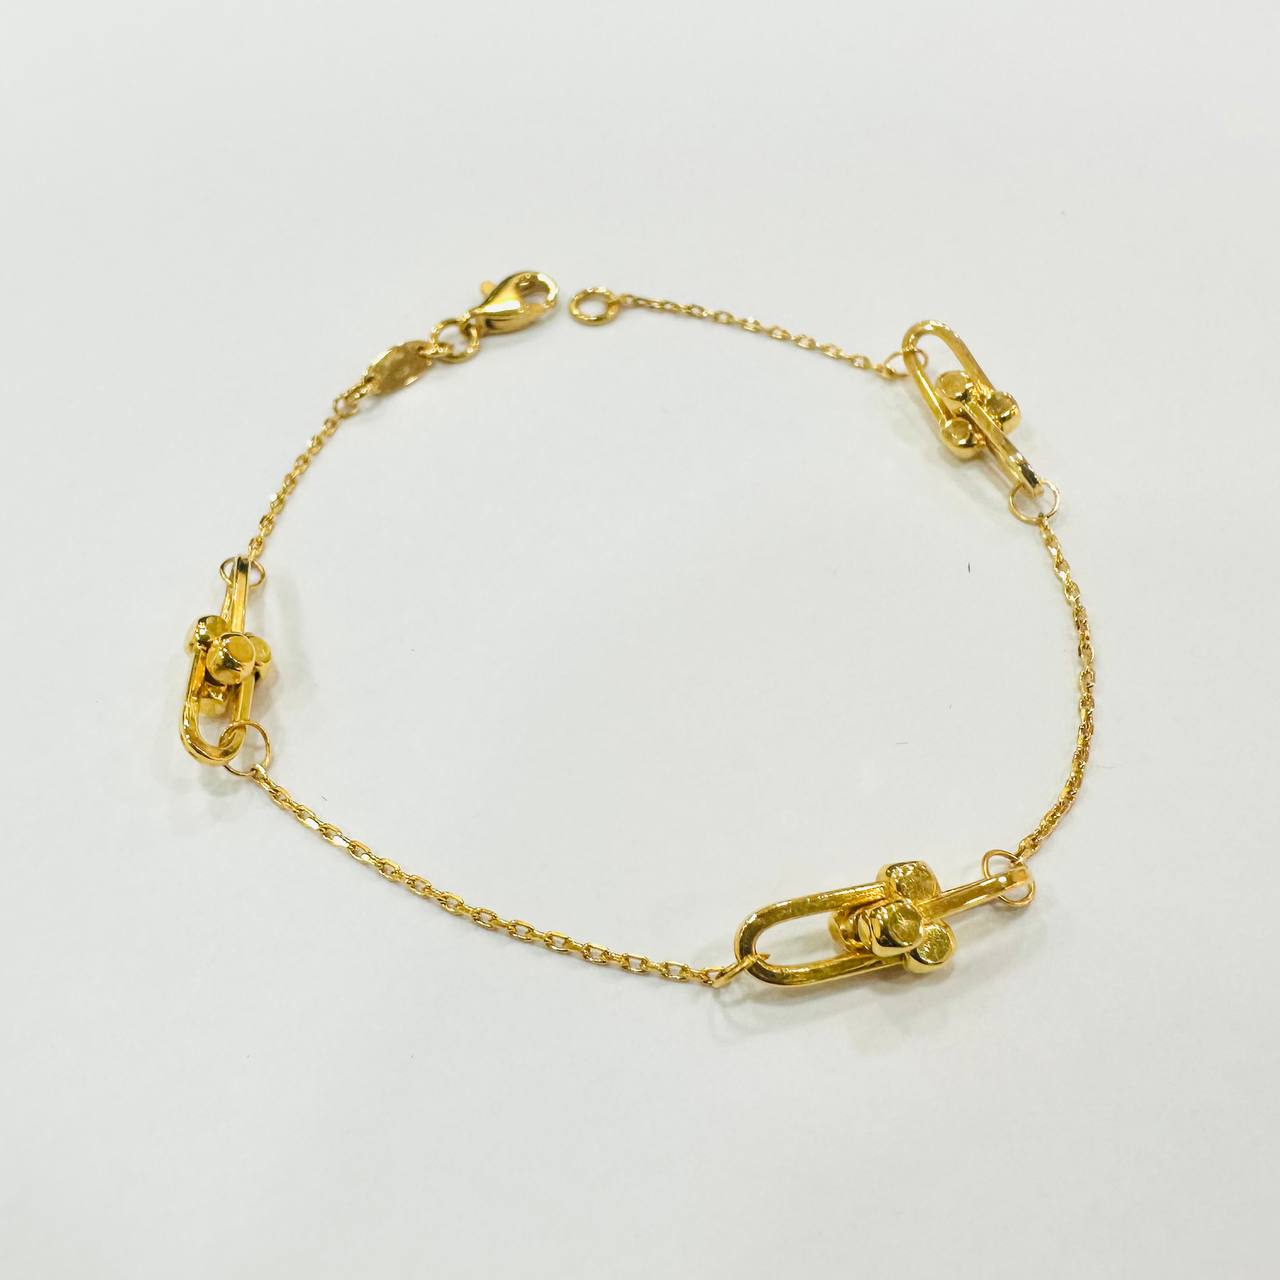 22k / 916 Gold Designer bracelet v3-916 gold-Best Gold Shop